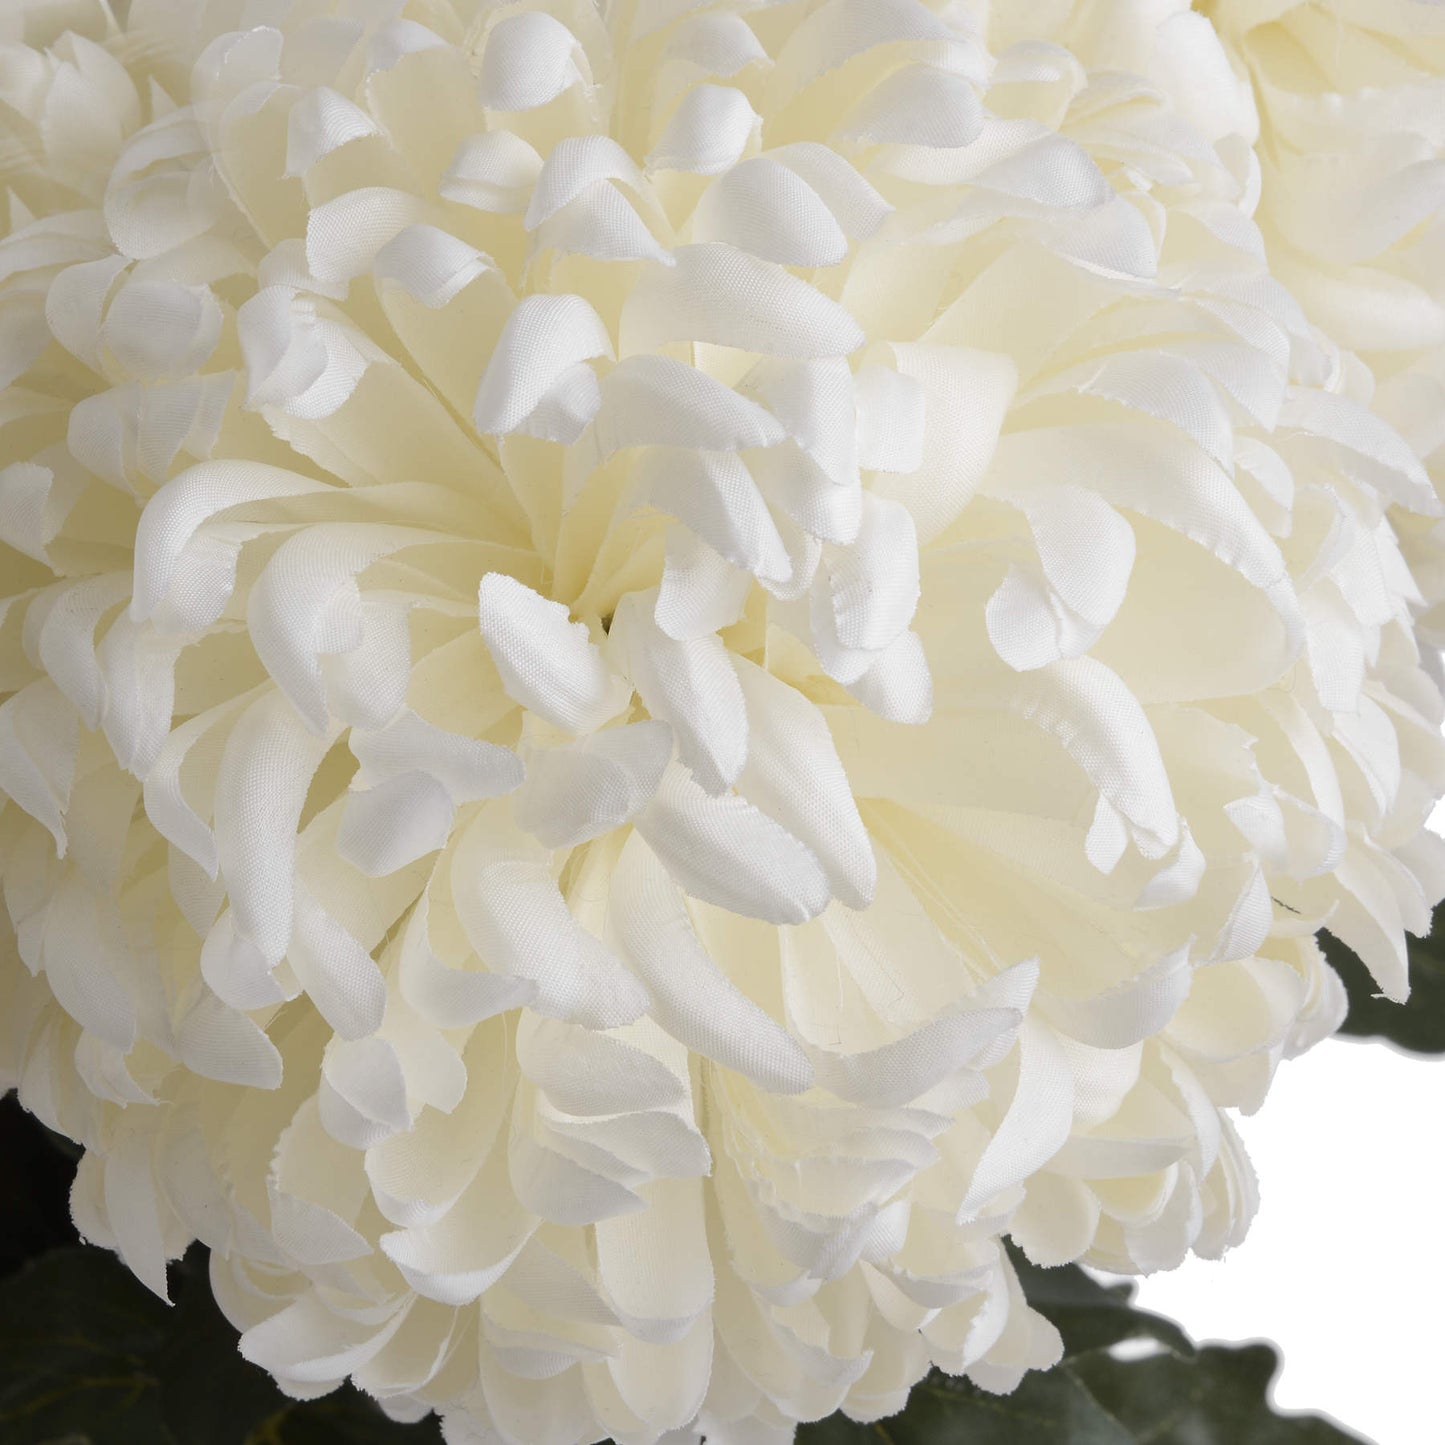 Large White Chrysanthemum